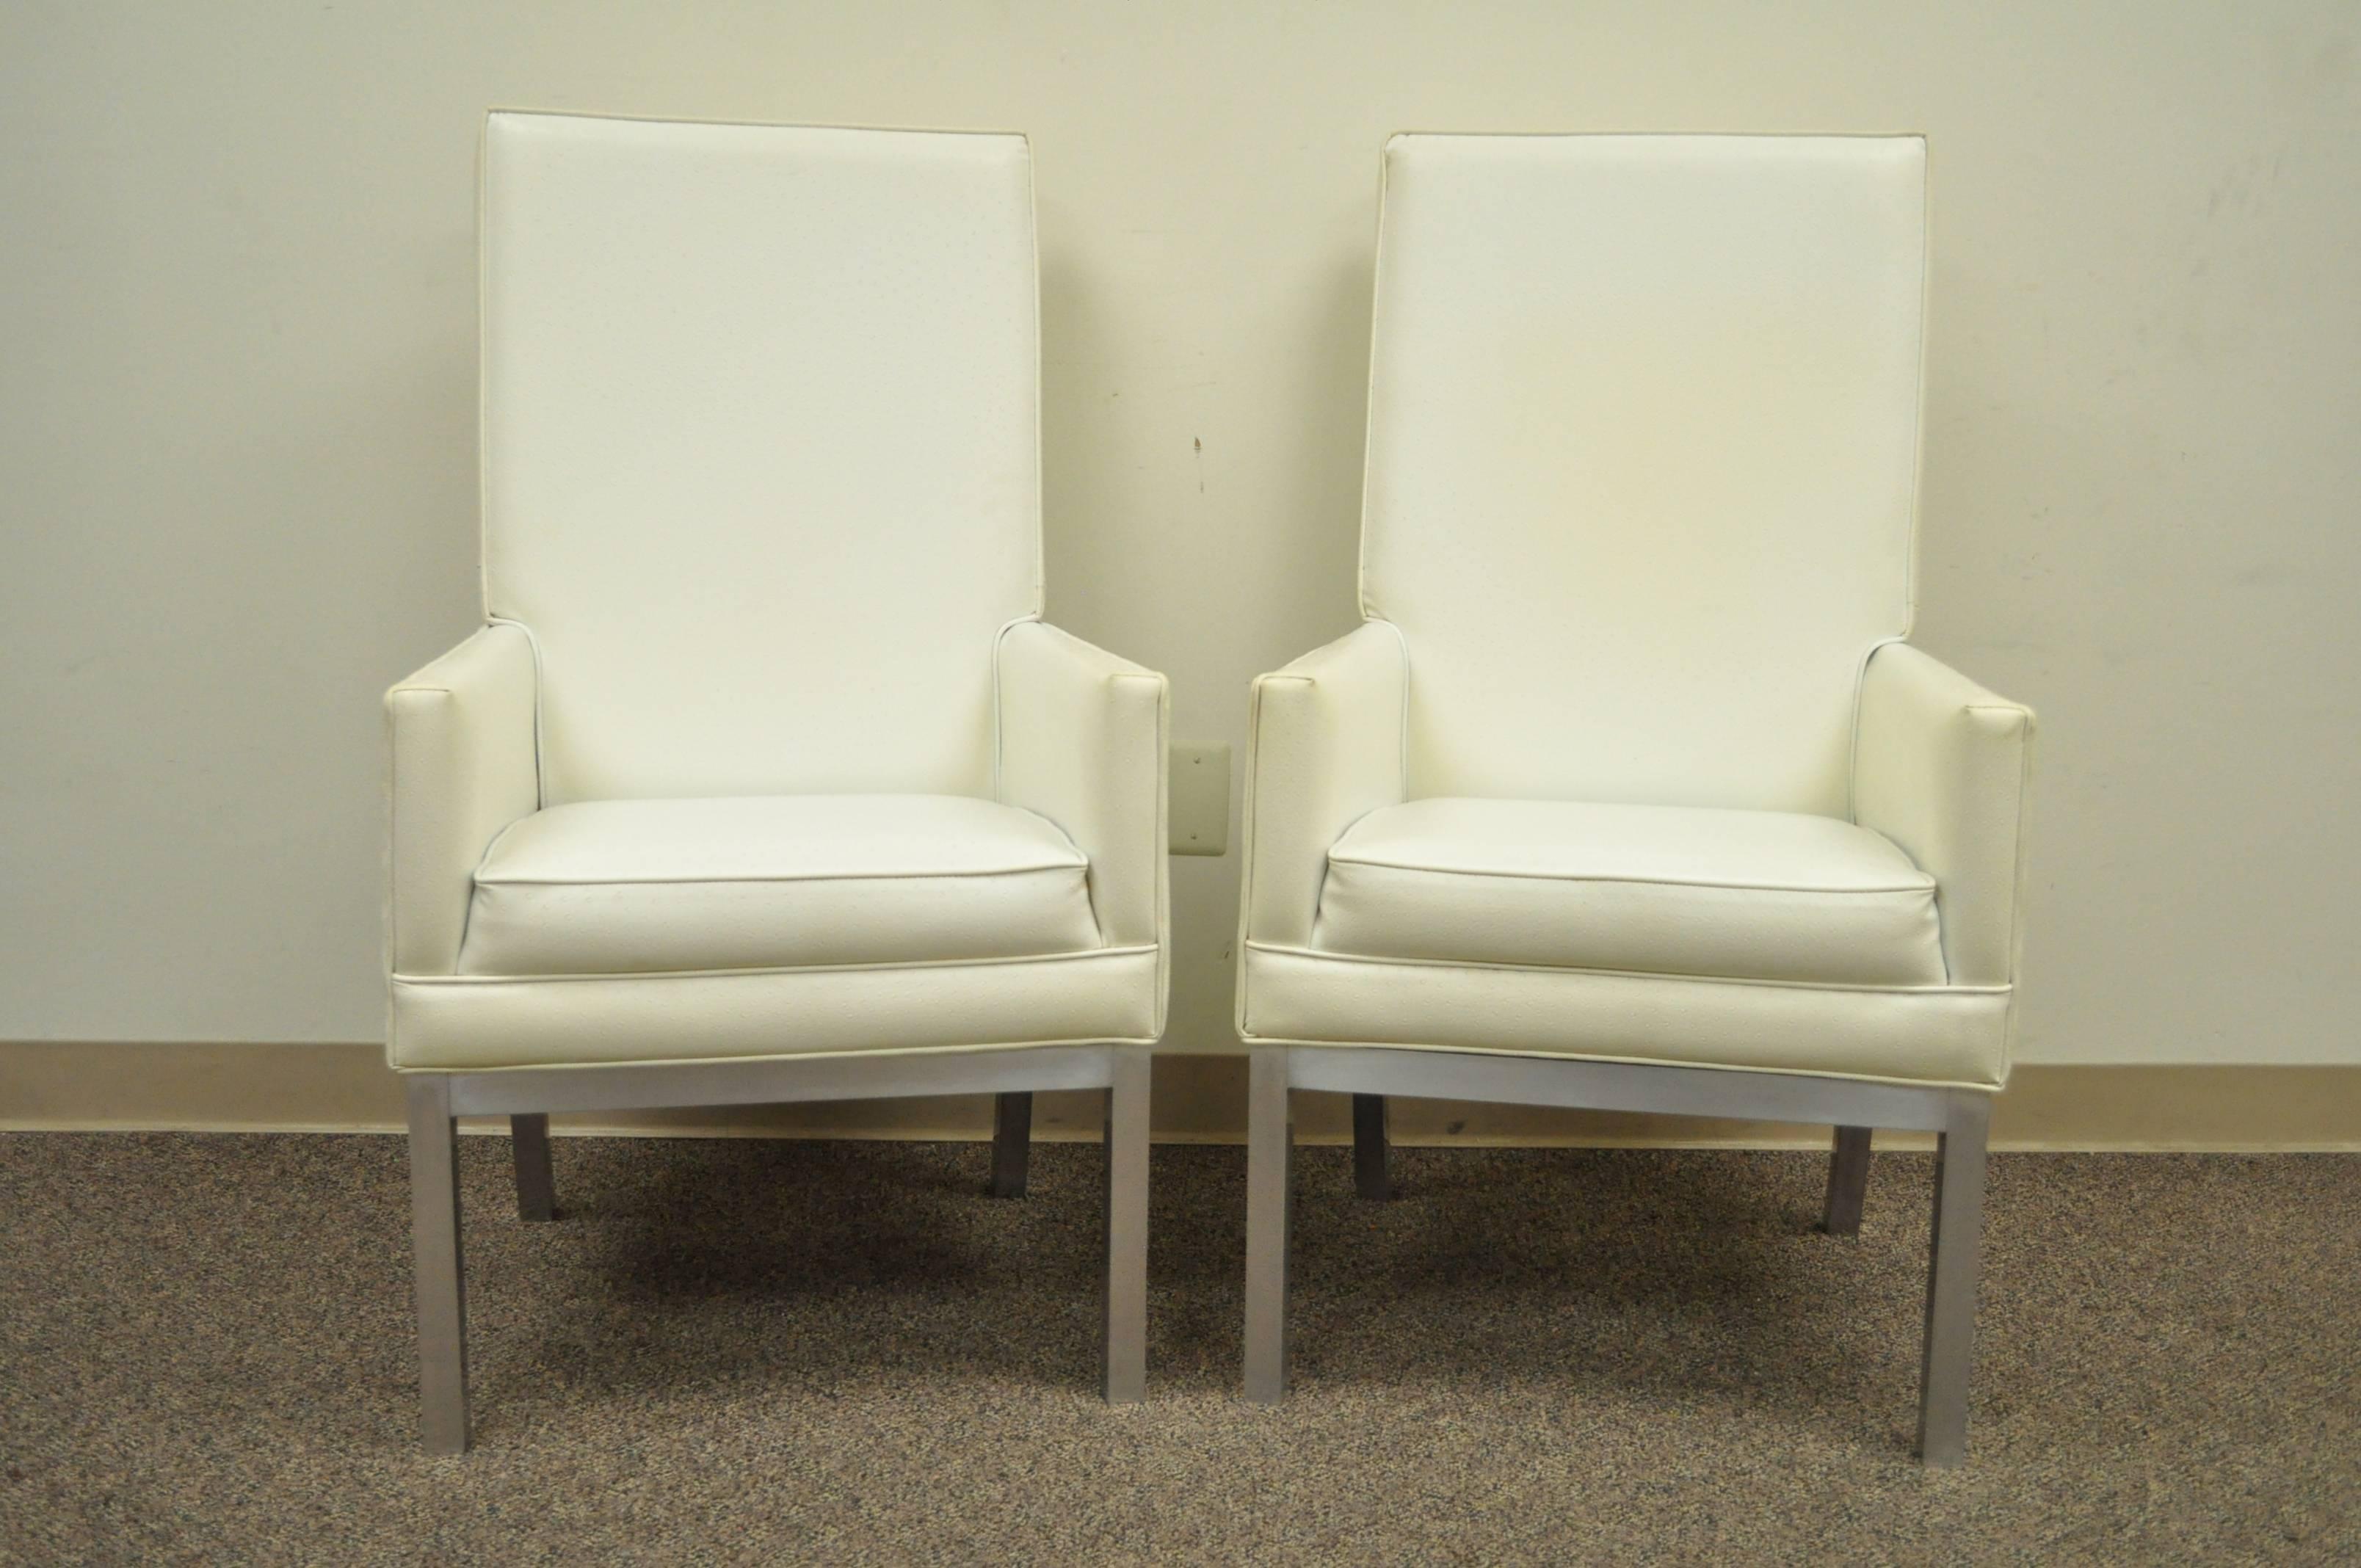 Tolles Paar modernistischer Vintage-Sessel im Parsons-Stil. Das Paar zeichnet sich durch hohe bequeme Rückenlehnen, abgewinkelte Hinterbeine, klare Linien, gebürstete Aluminiumfüße und eine großartige Gesamtform aus. 